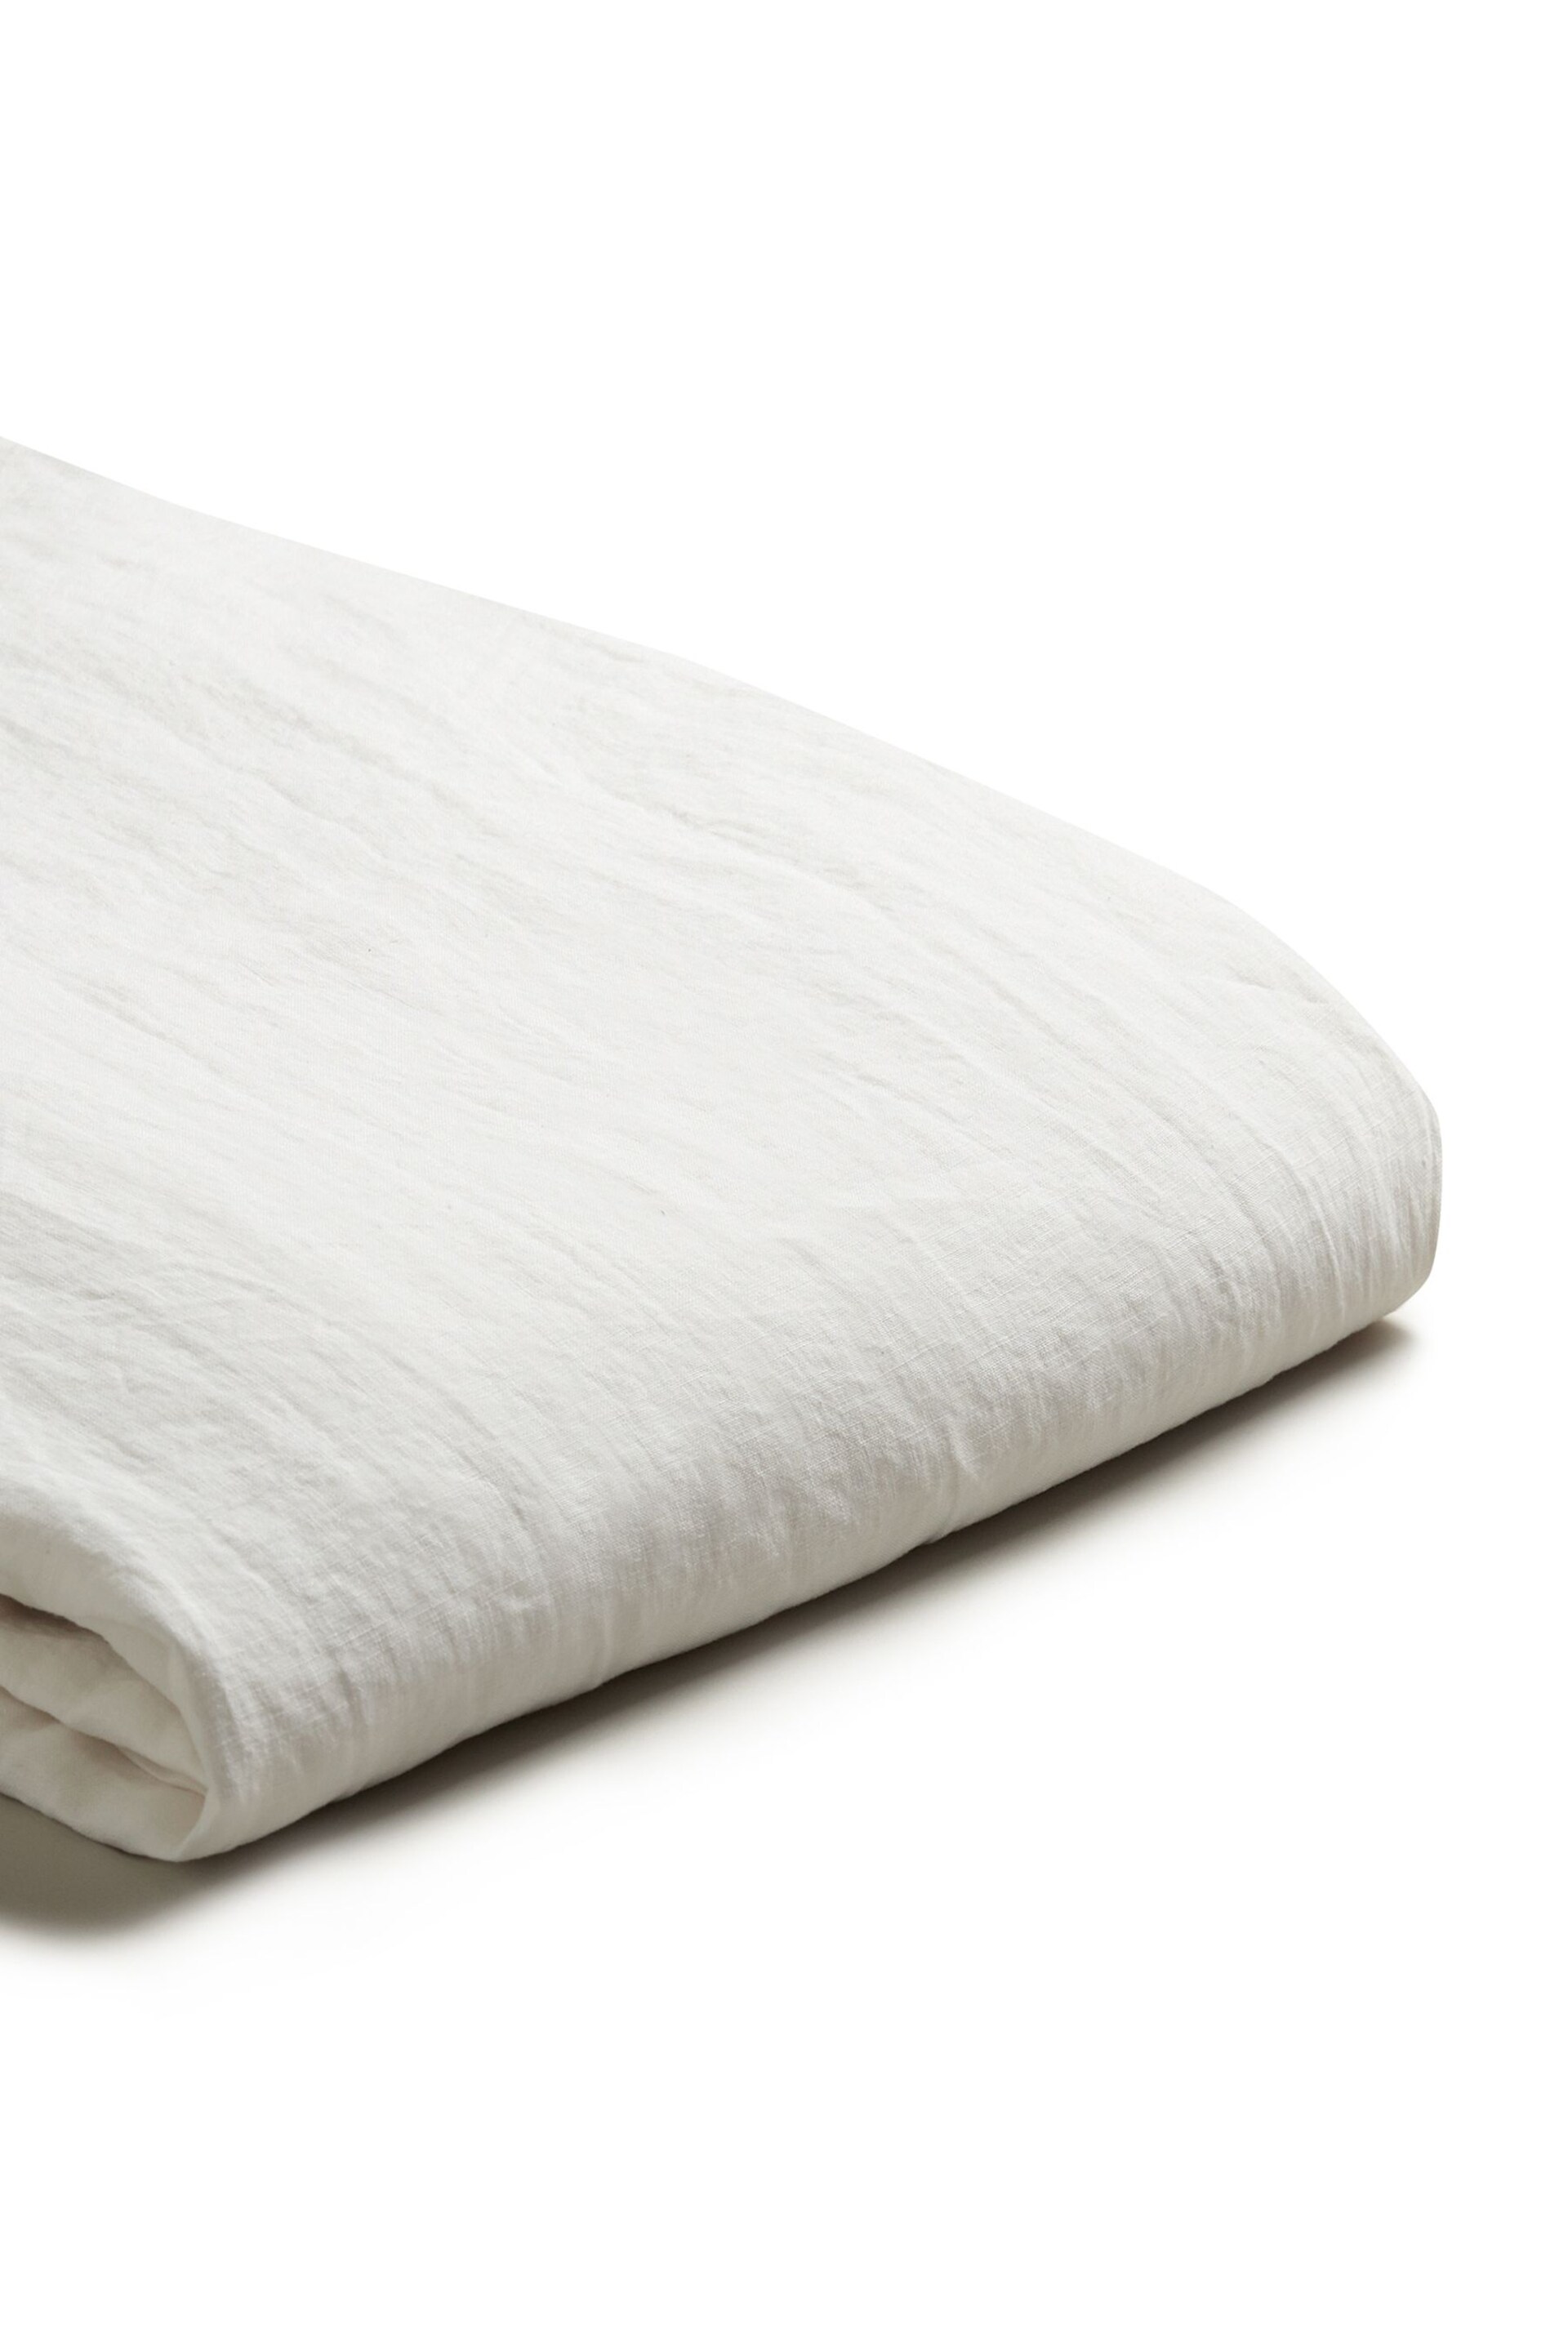 Piglet in Bed White Linen Duvet Cover - Image 4 of 4